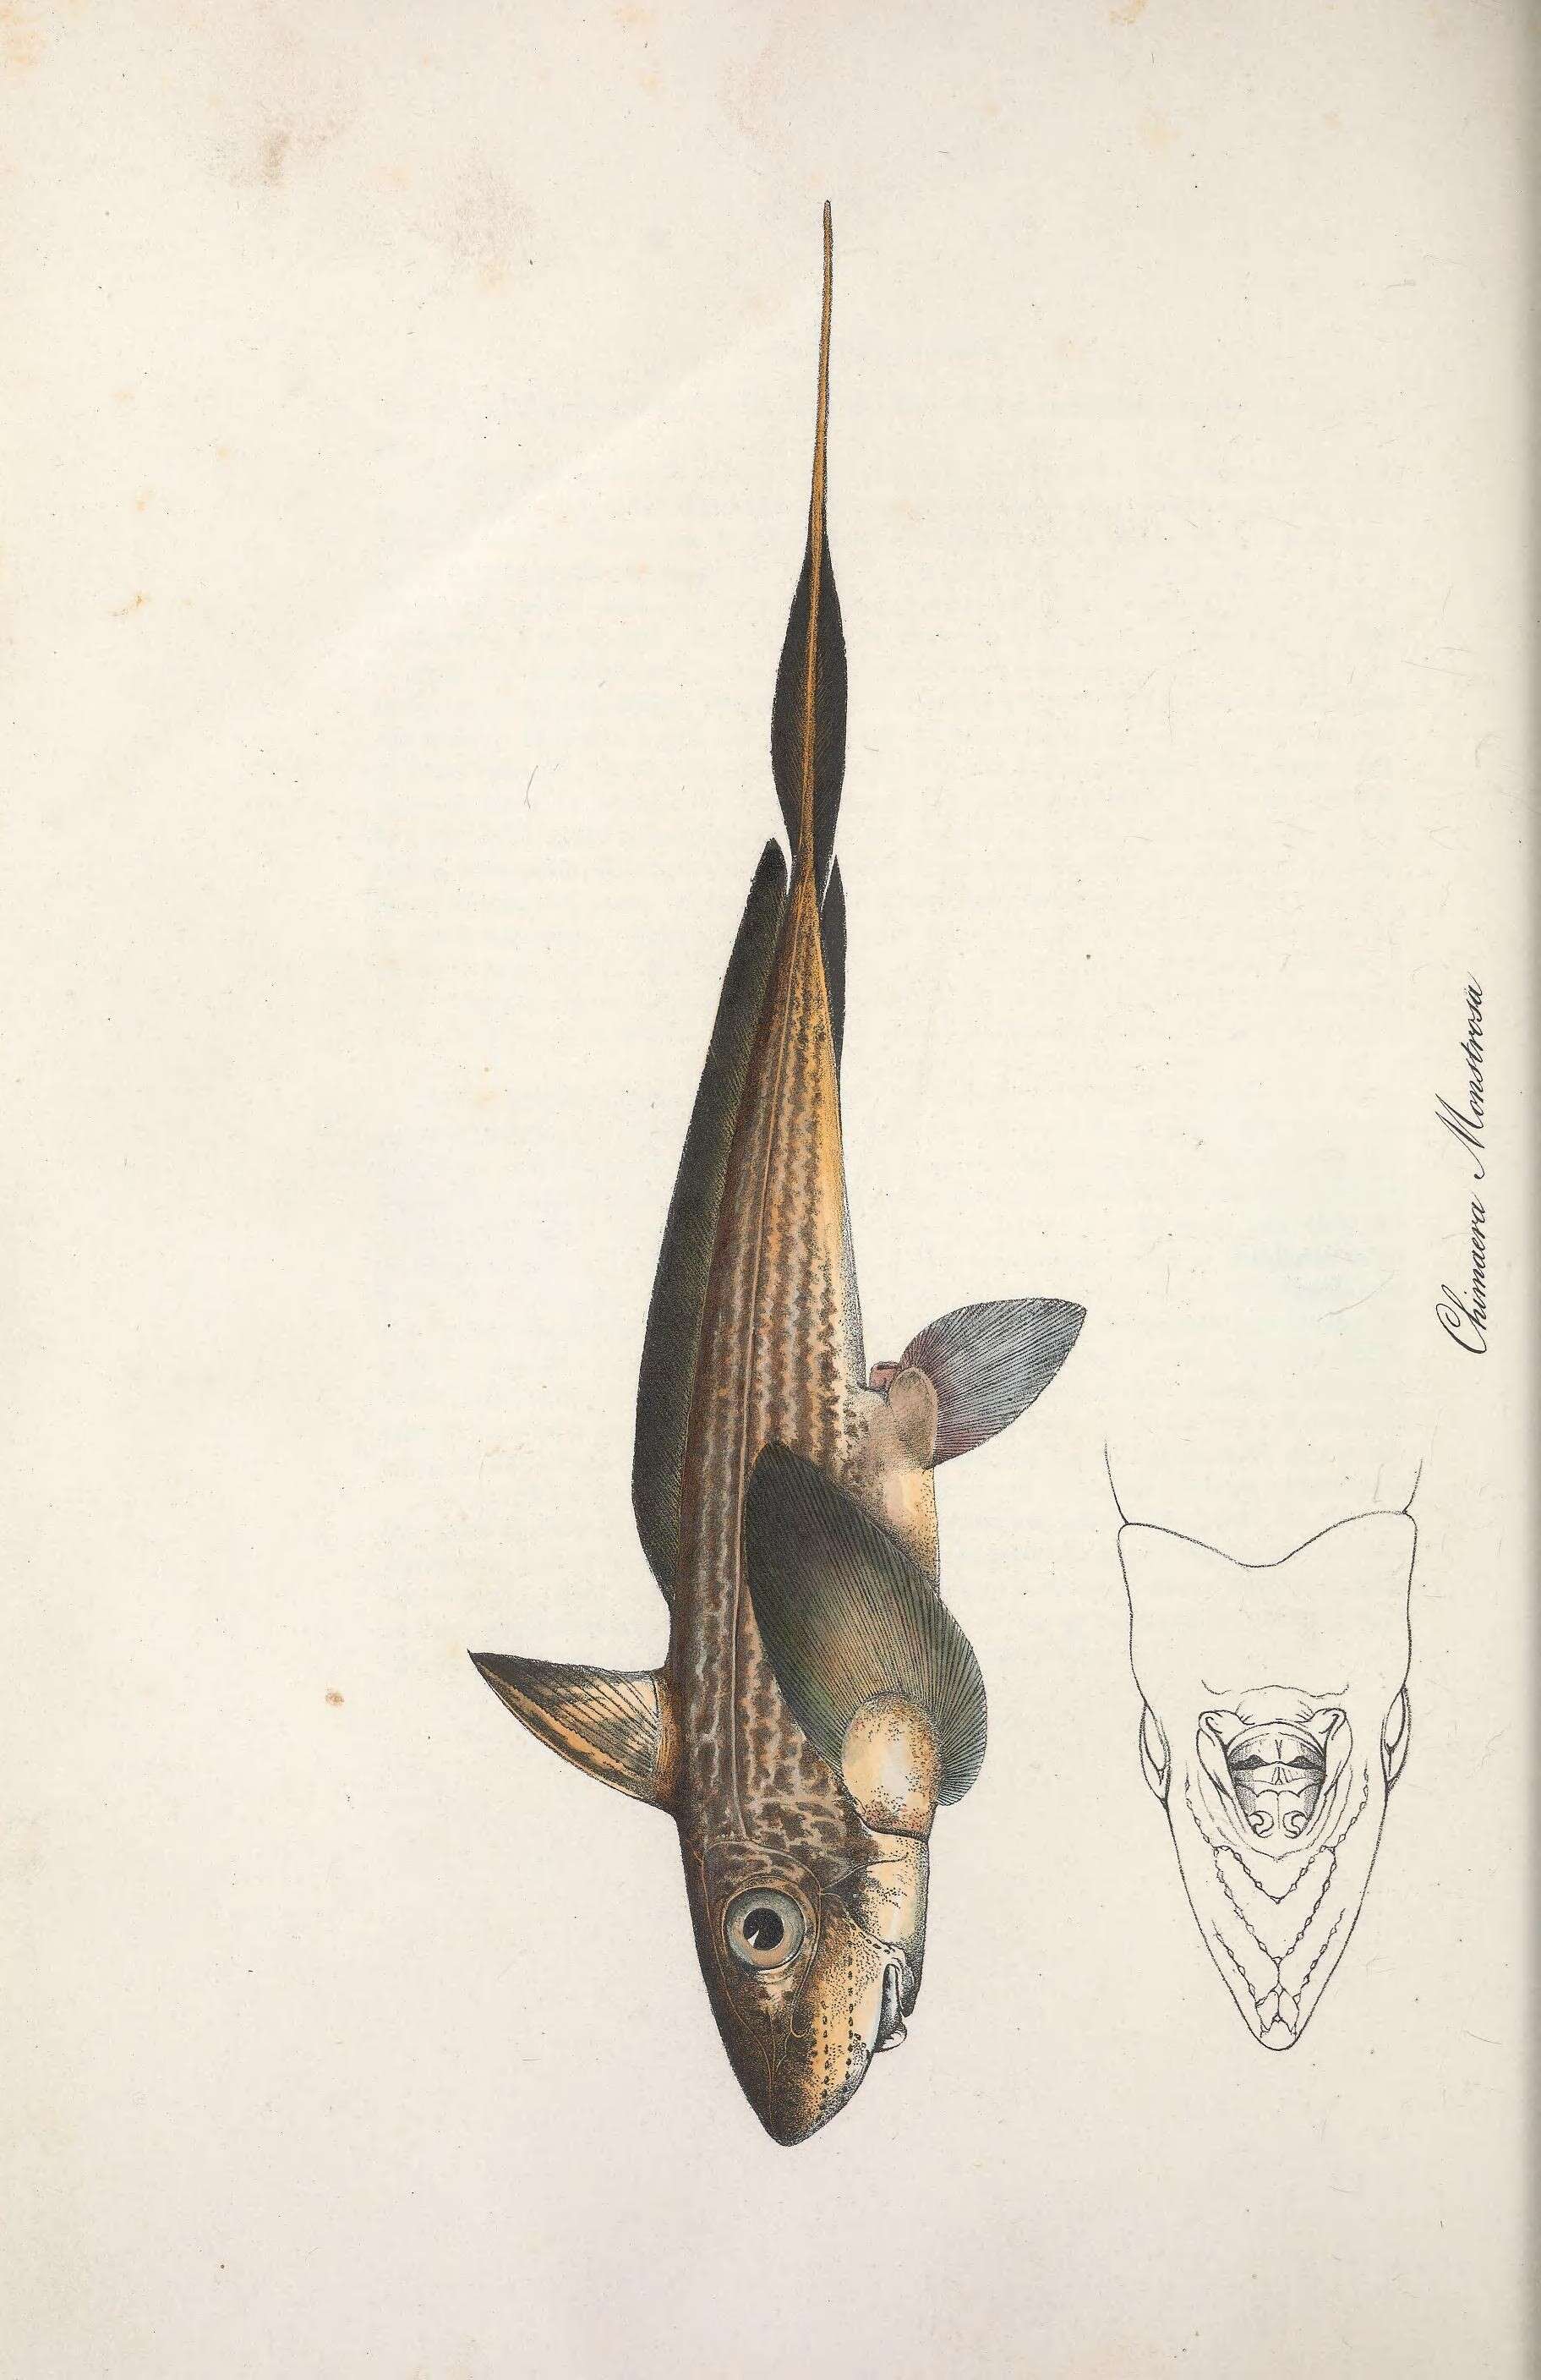 Imagem de Chimaera monstrosa Linnaeus 1758